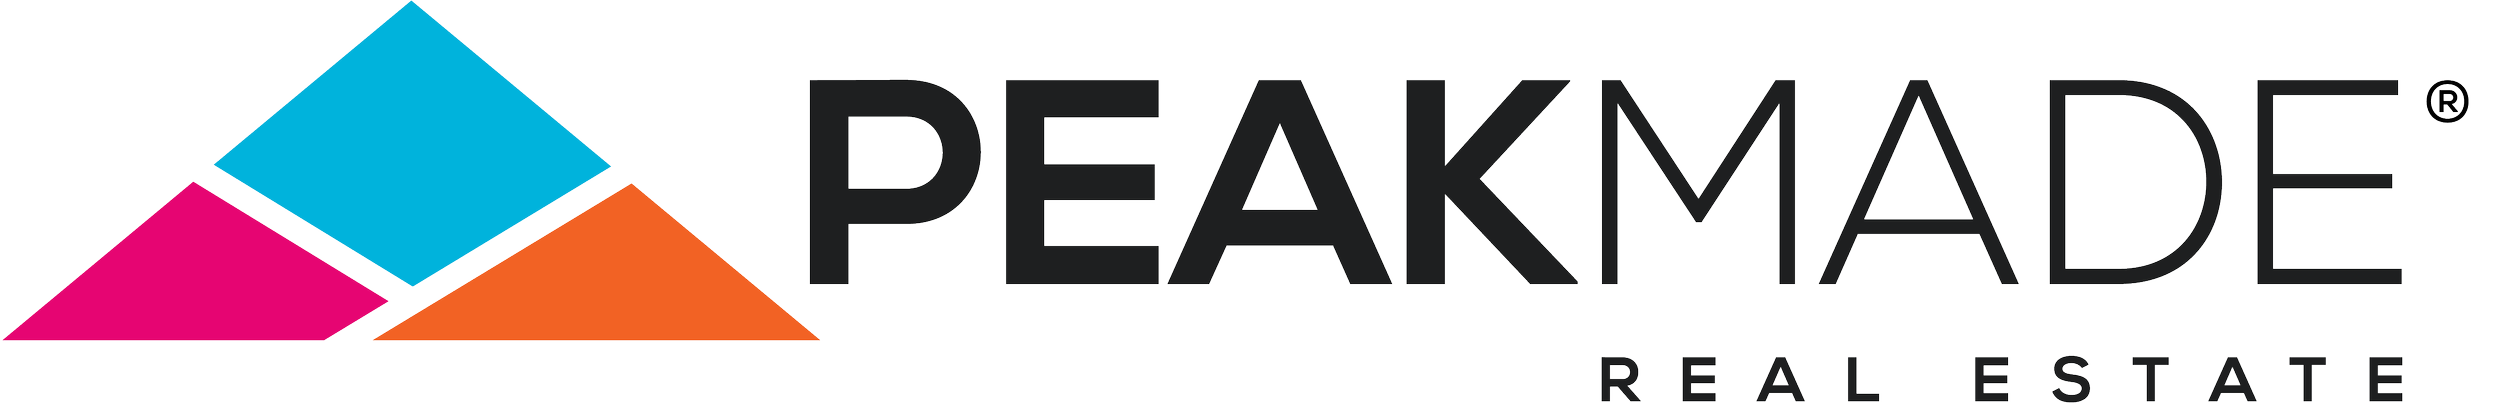 PeakMadeRealEstate_Logo_Horizontal_CMYK.png